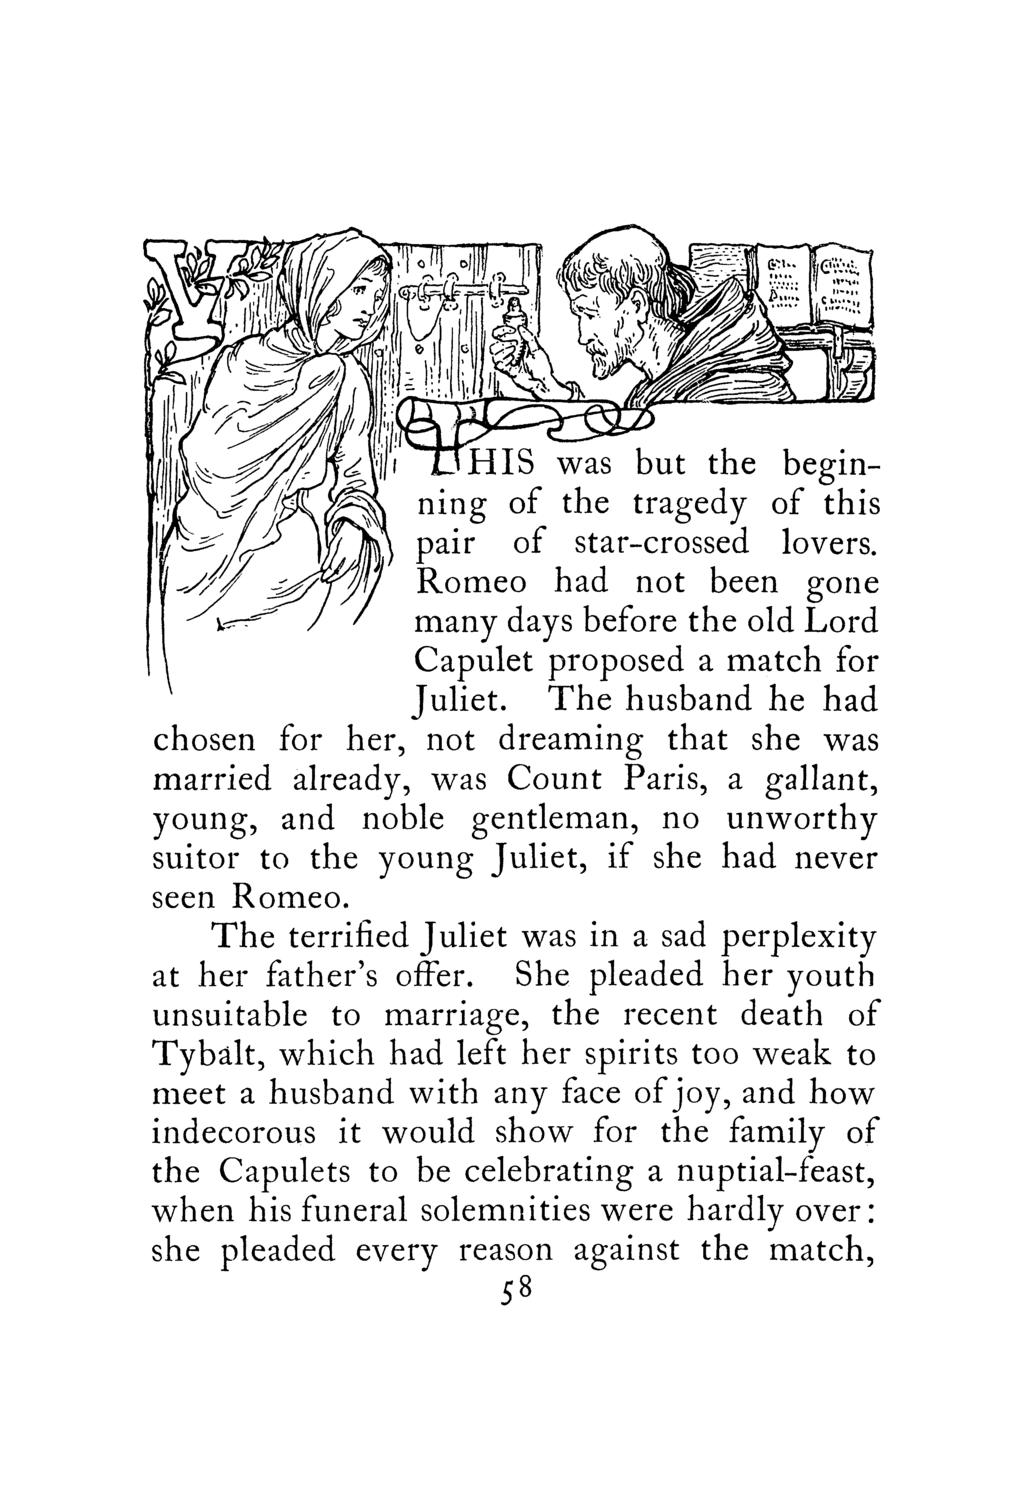 j \ Capulet proposed a match for Juliet.